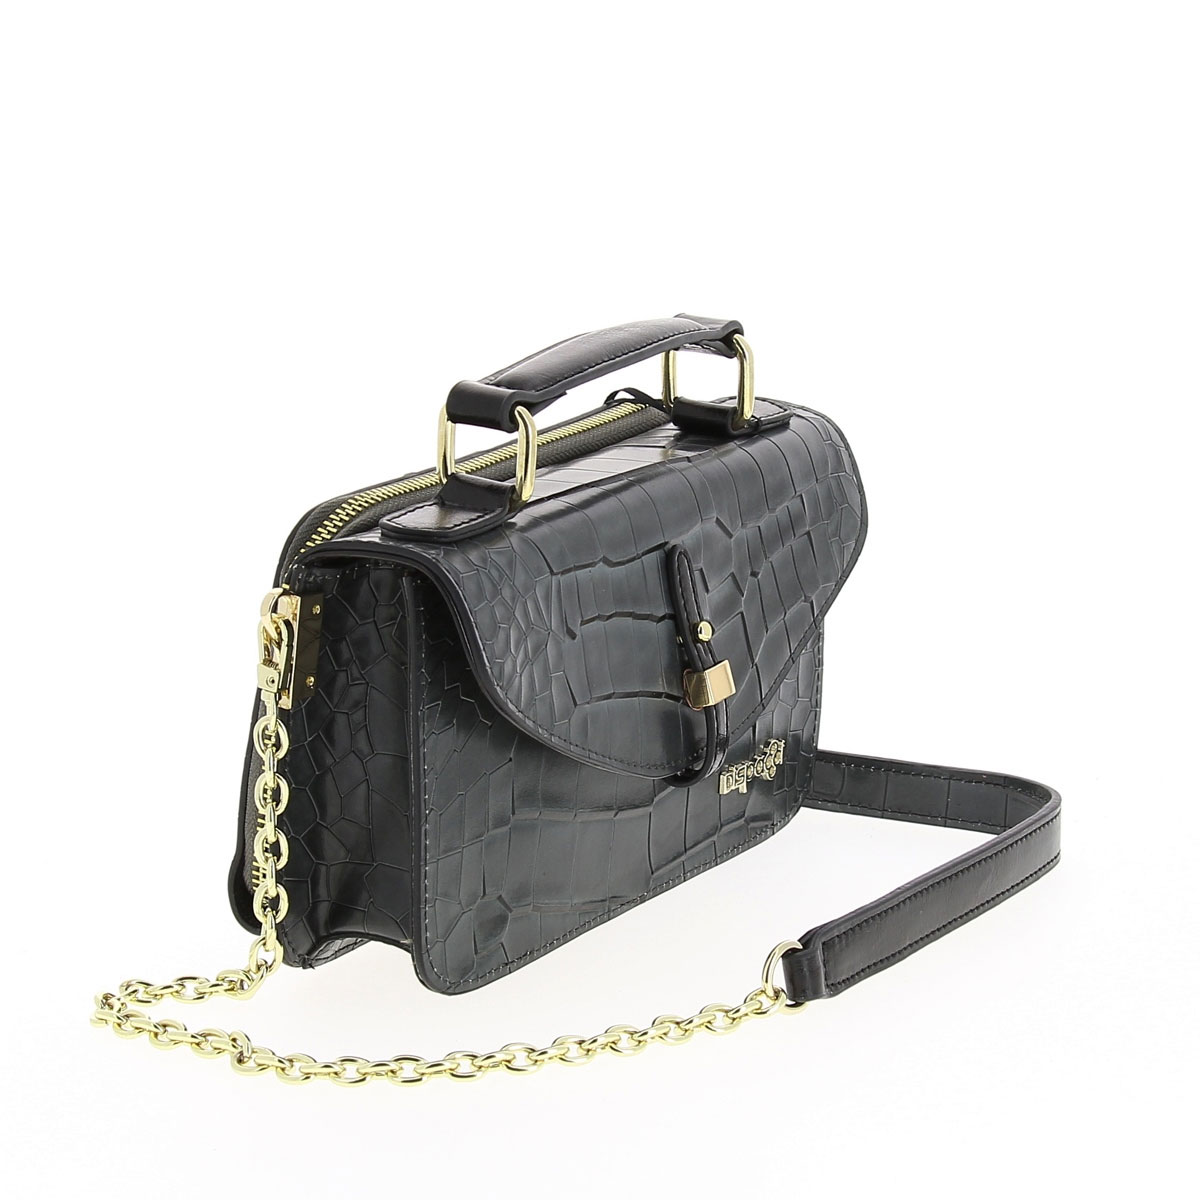 Сумка женская "Dispacci", цвет: черный. Т3191-1 - купить фирменную сумку по доступной цене с доставкой на дом в интернет магазине OZON.ru